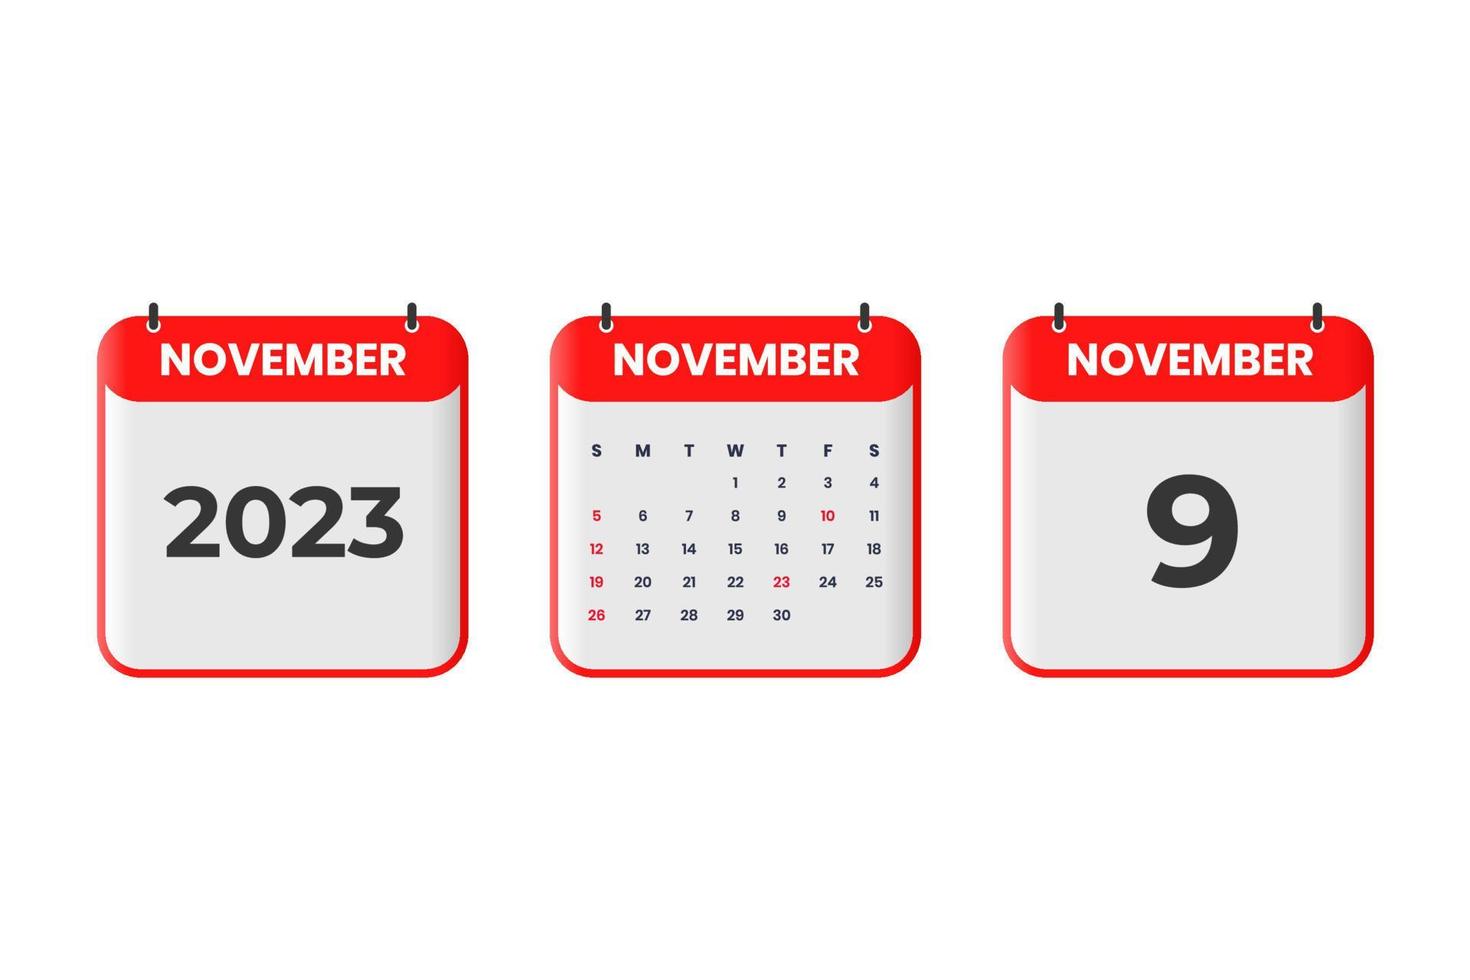 november 2023 kalender design. 9:e november 2023 kalender ikon för schema, utnämning, Viktig datum begrepp vektor